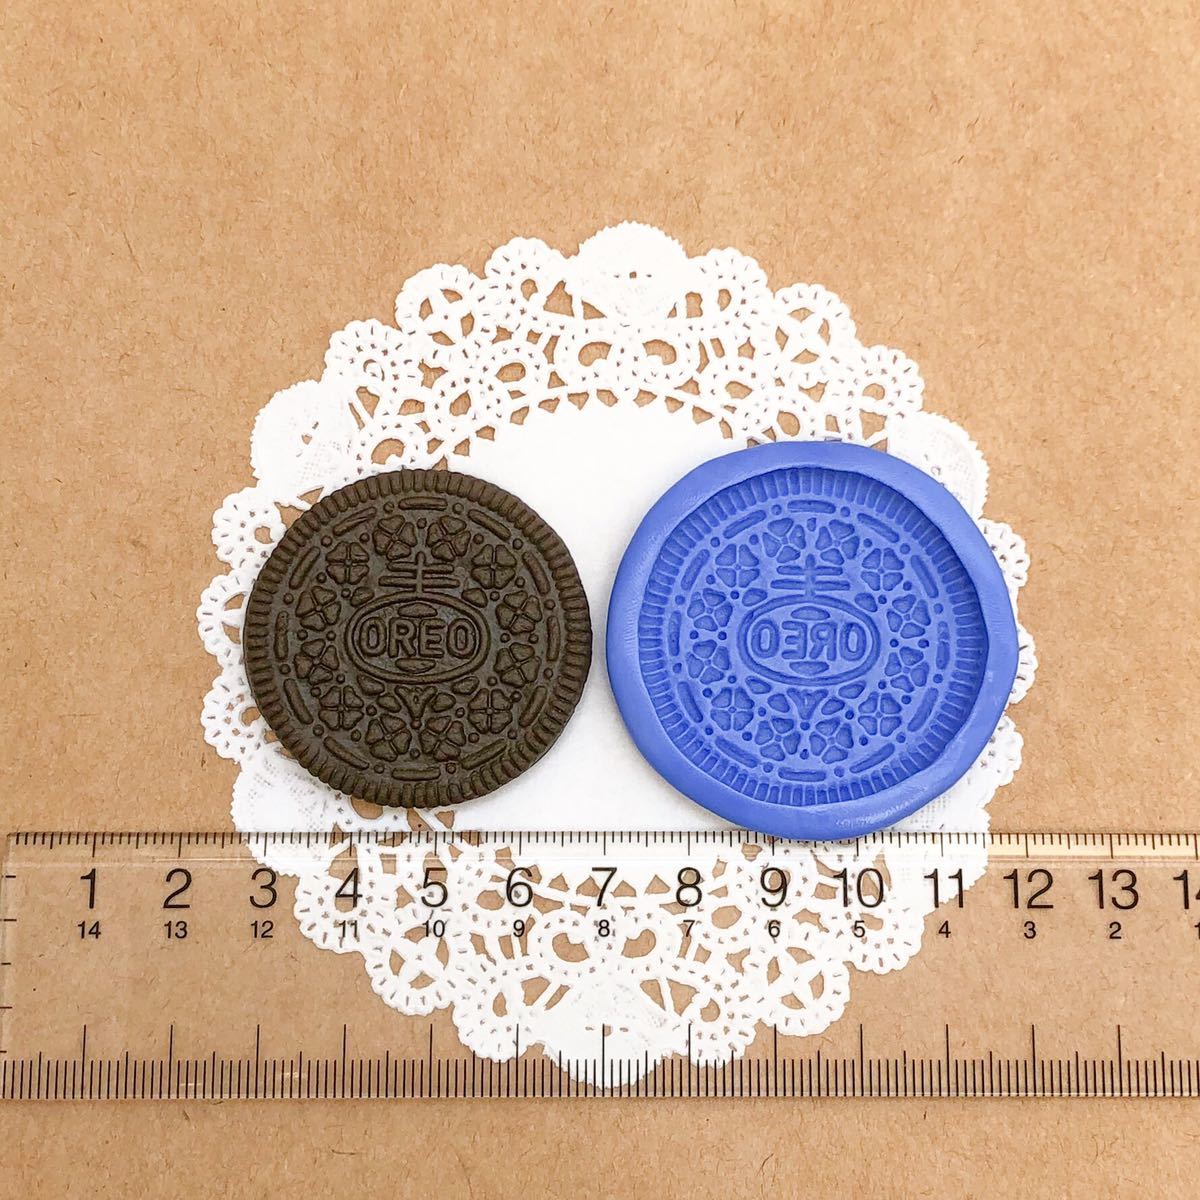 304 オレオ風クッキー型 デコ パーツ 樹脂粘土 チョコクッキー ブルーミックス ビスケット シリコン モールド ハンドメイド ミニチュア_画像2